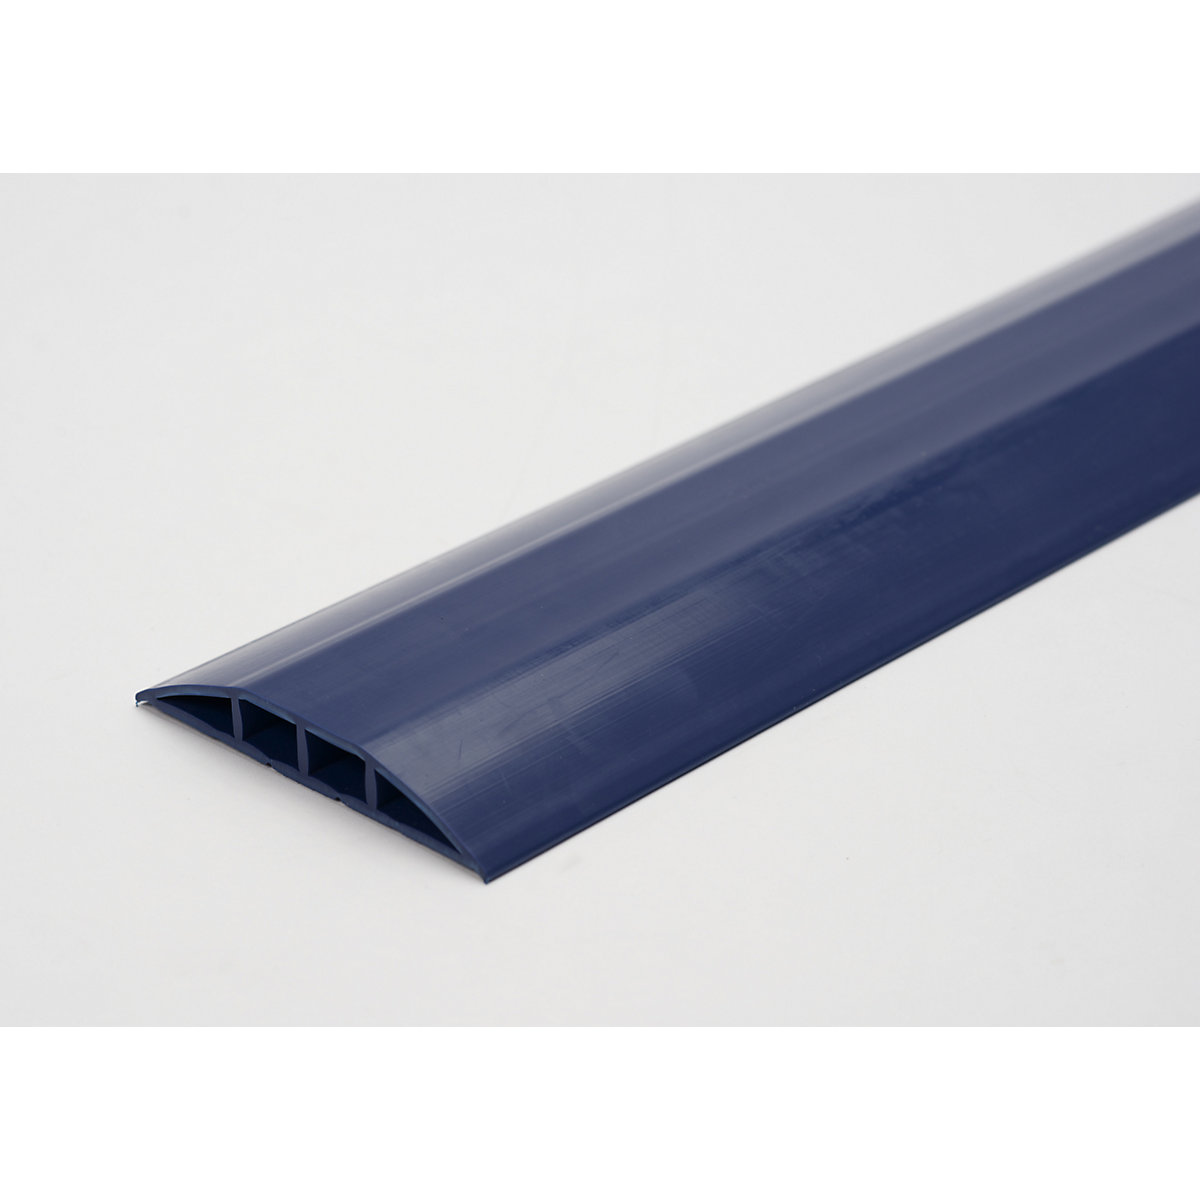 Canalina passacavo in plastica, per cavi e tubi flessibili con Ø fino a 7,5 mm, blu, 2 camere, lunghezza 1,5 m-3